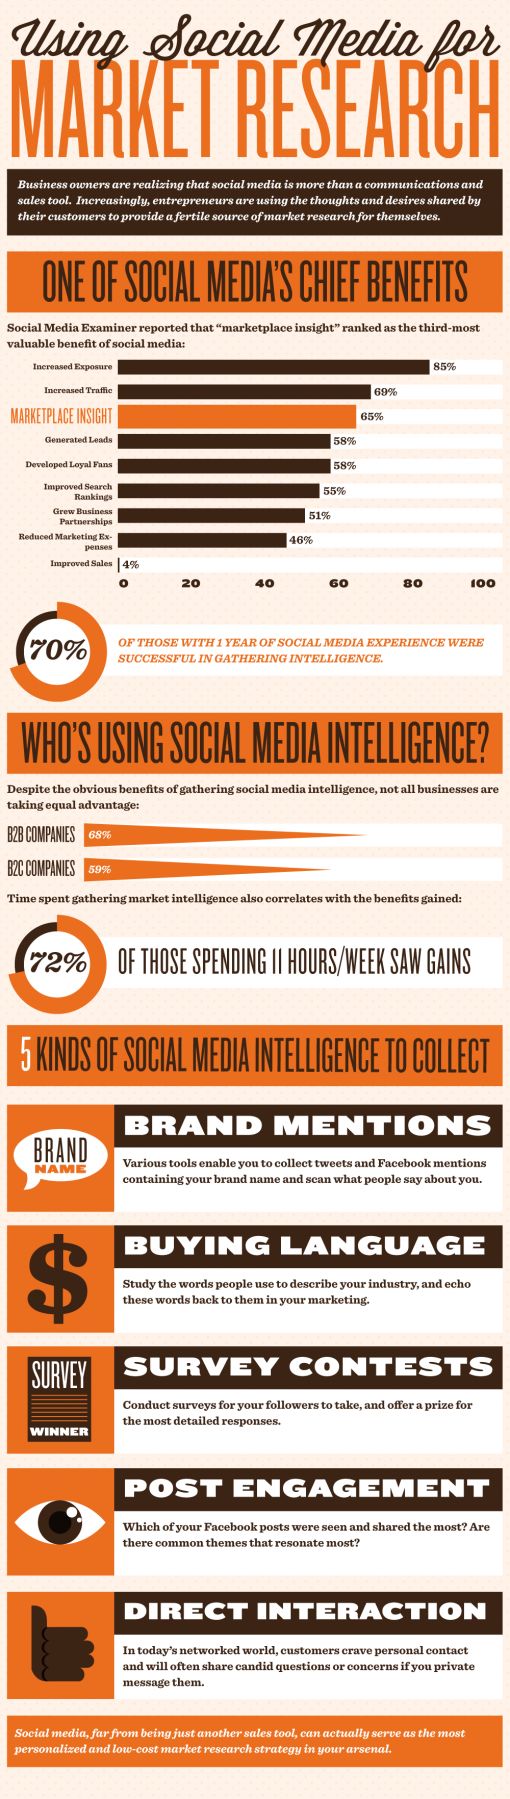 social-media-customer-research.jpg